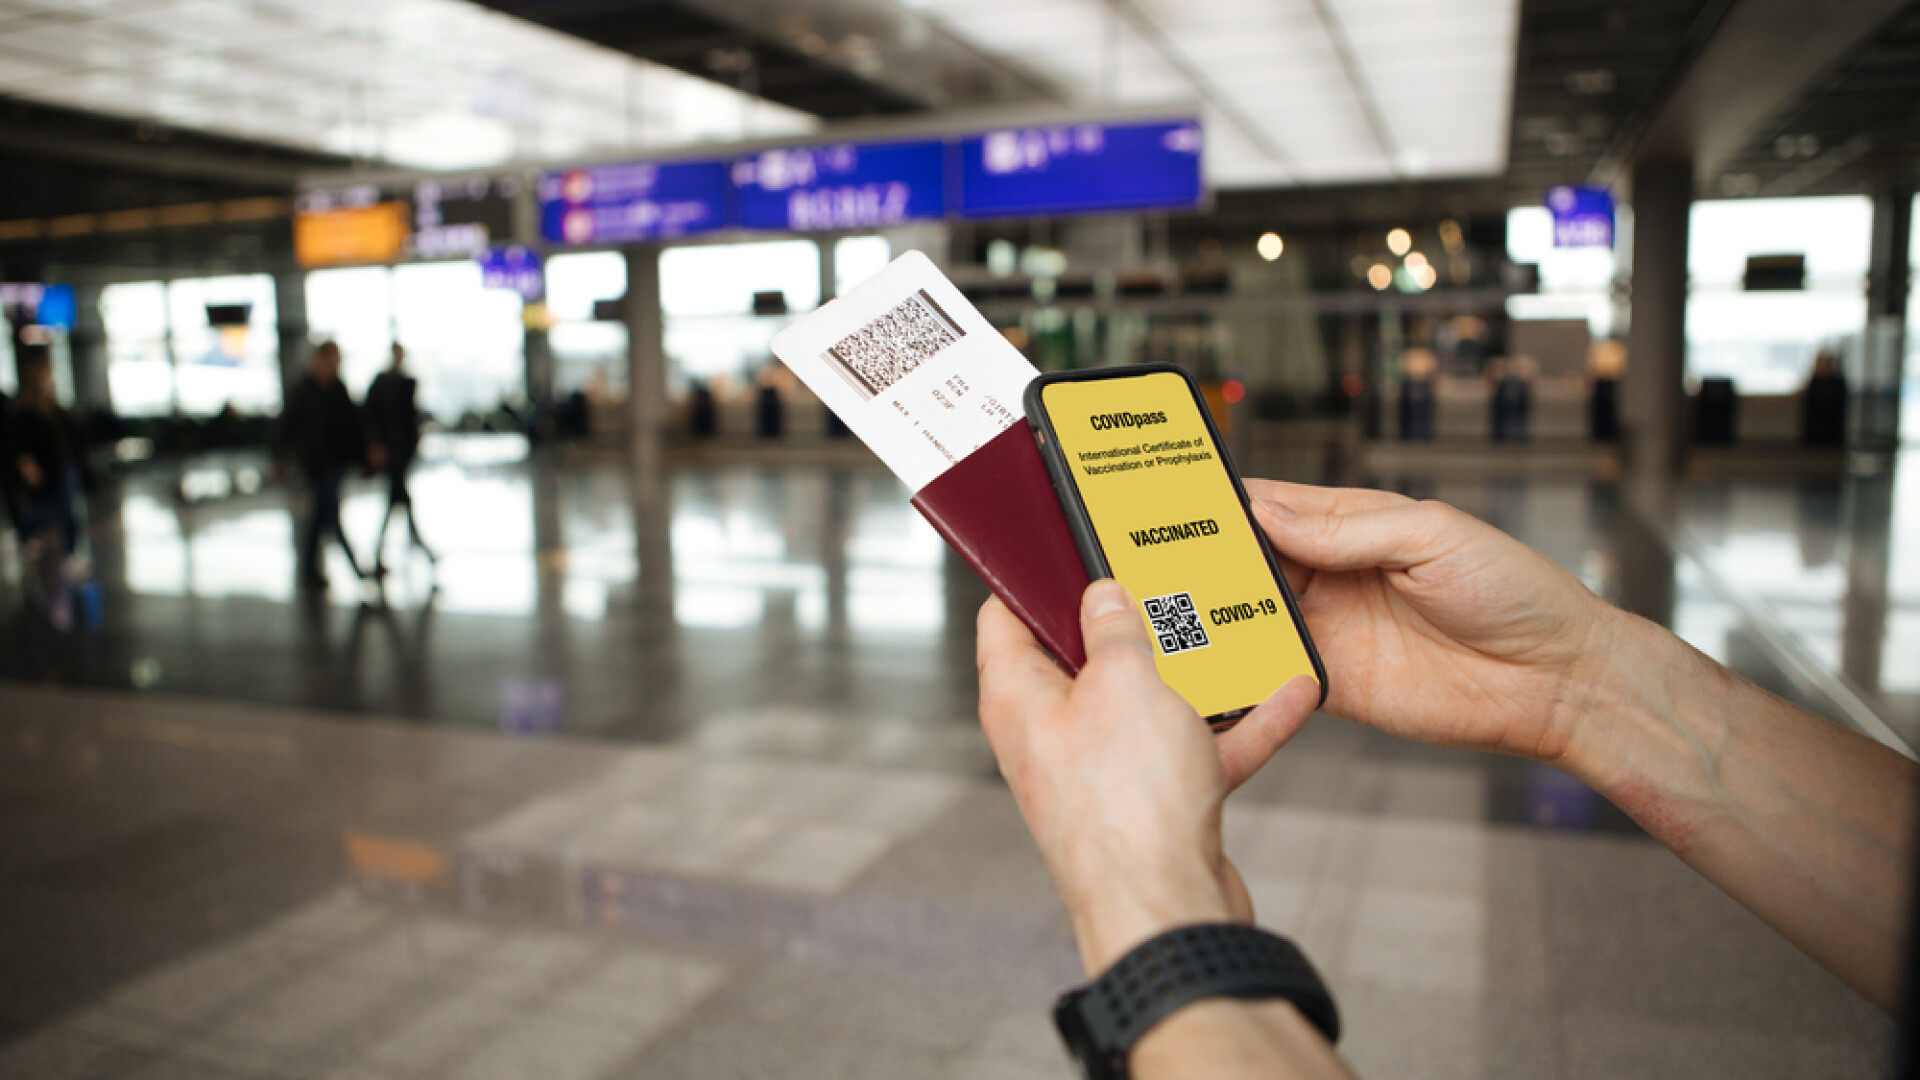 pasaport digital, carantina, aeroport